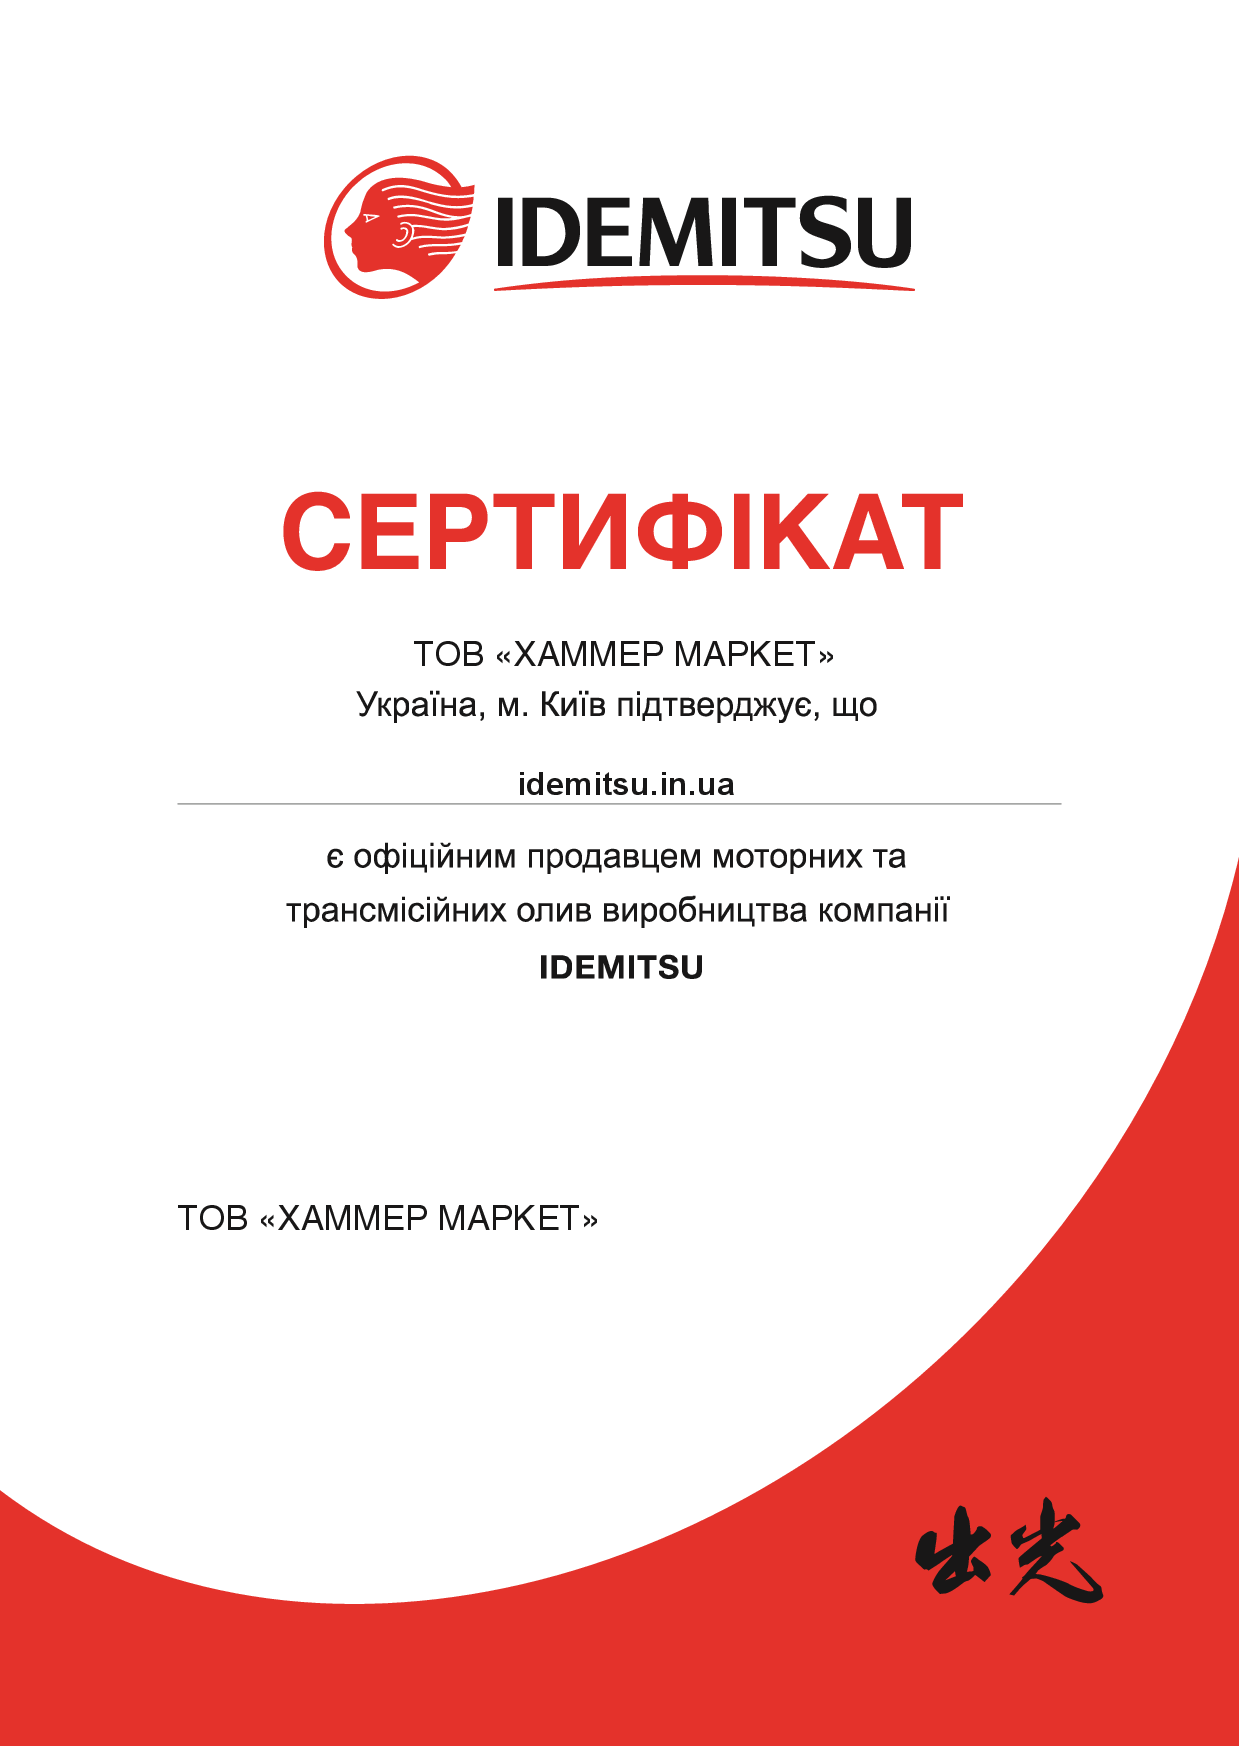 Сертификат официального продавца Idemitsu